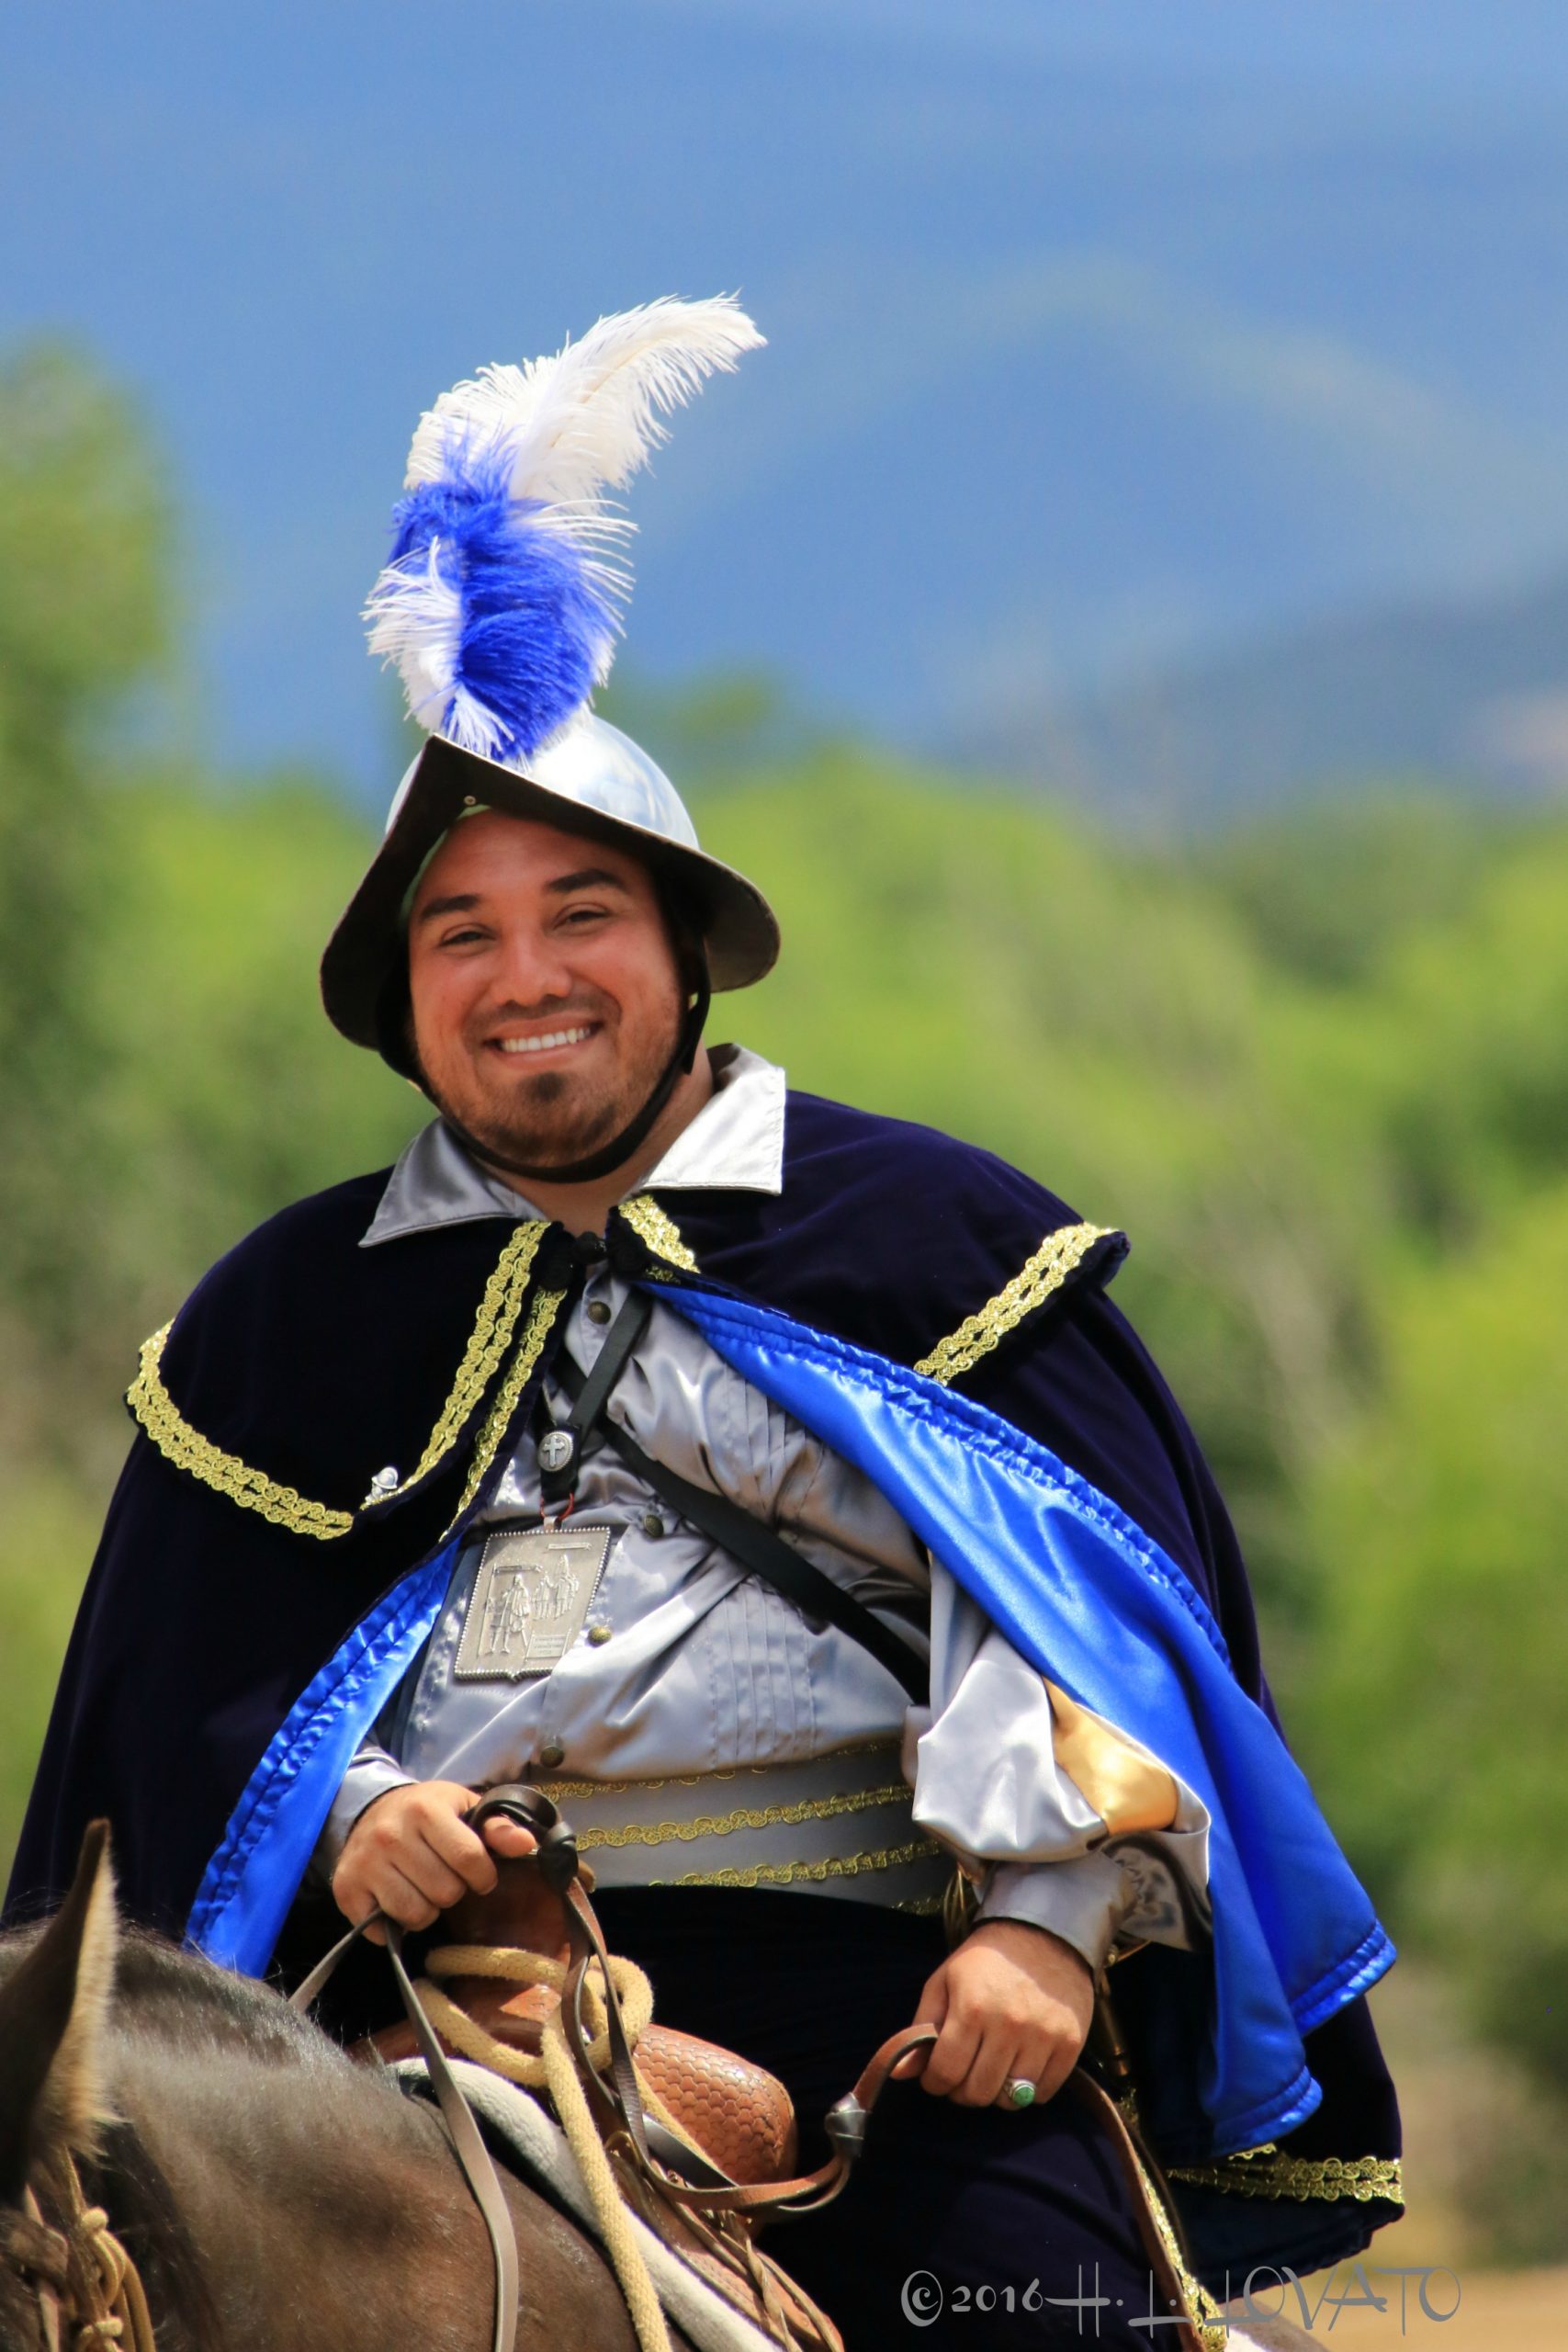 Man on horse dressed as a conquistador